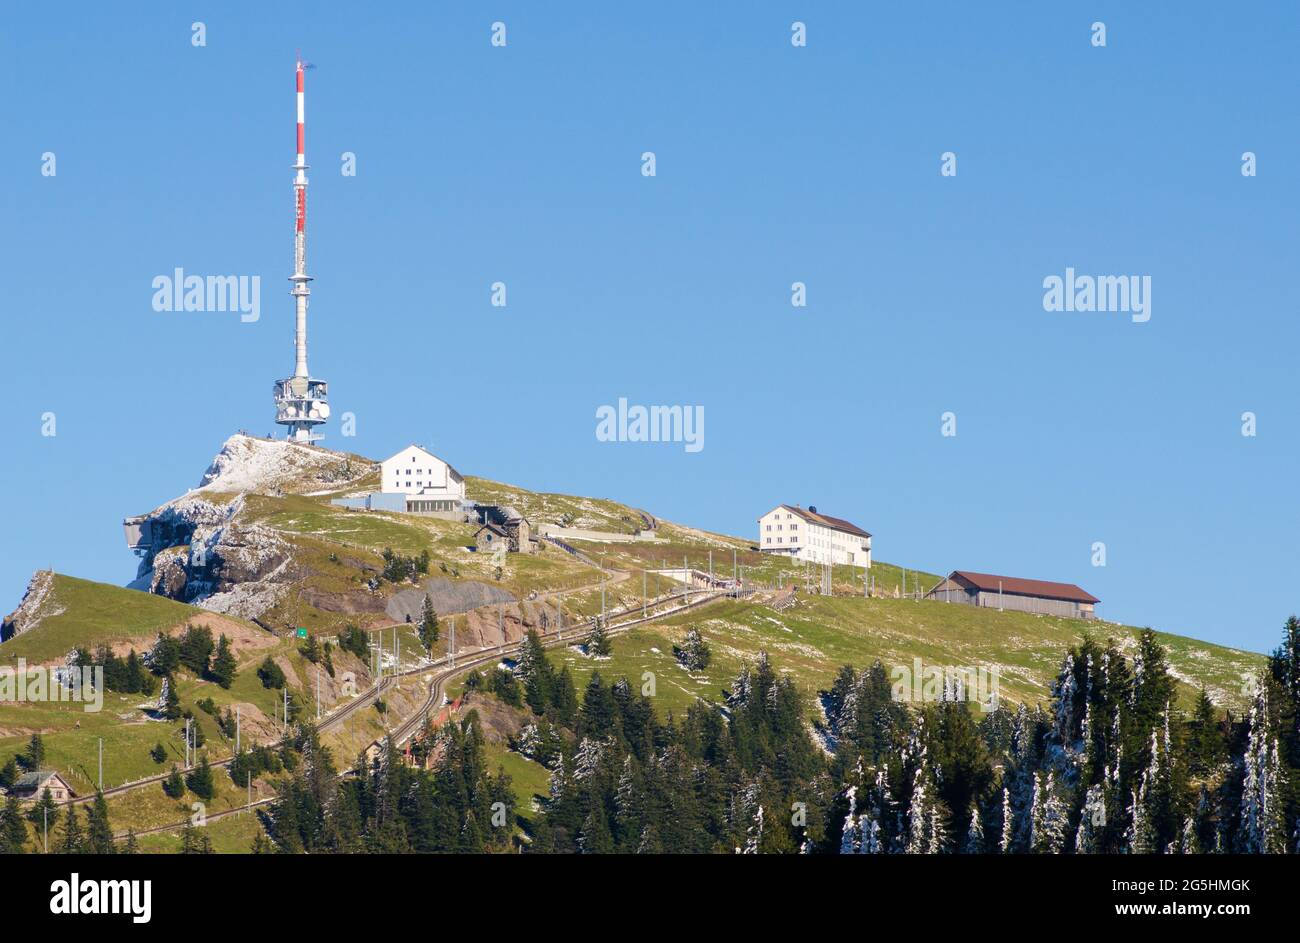 Rigi Kulm Gipfel mit Bahnhof und Rundfunk- oder Kommunikationsmast, Rigi in den Schwyzer Alpen, Schweizer Alpen, Schweiz Stockfoto